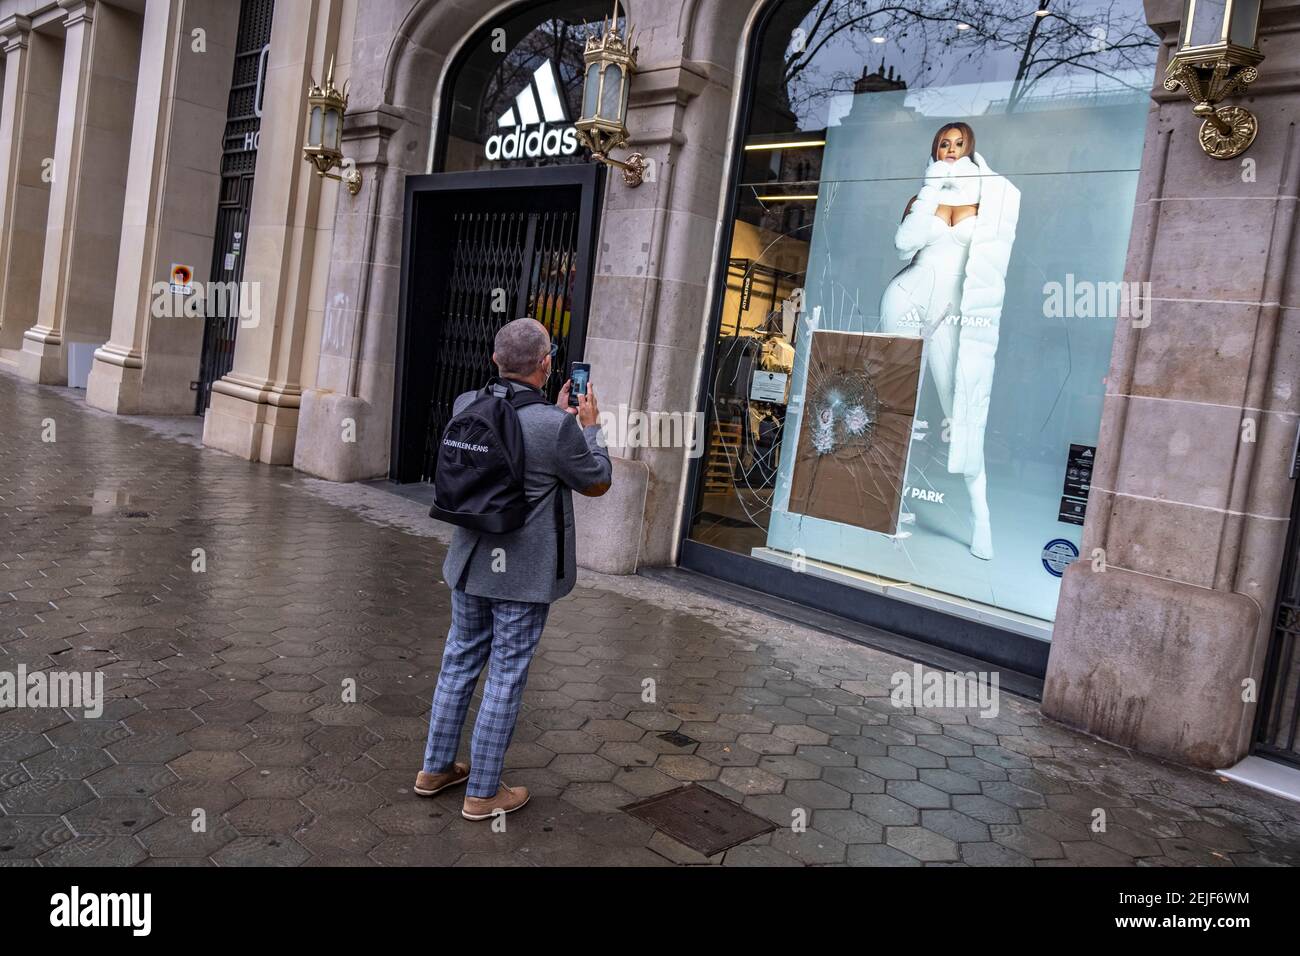 Barcelona, España. 22 de febrero de 2021. Se ve a un hombre haciendo fotos de los daños la tienda Adidas en el Passeig de Gràcia.más de 50 tiendas han sufrido daños